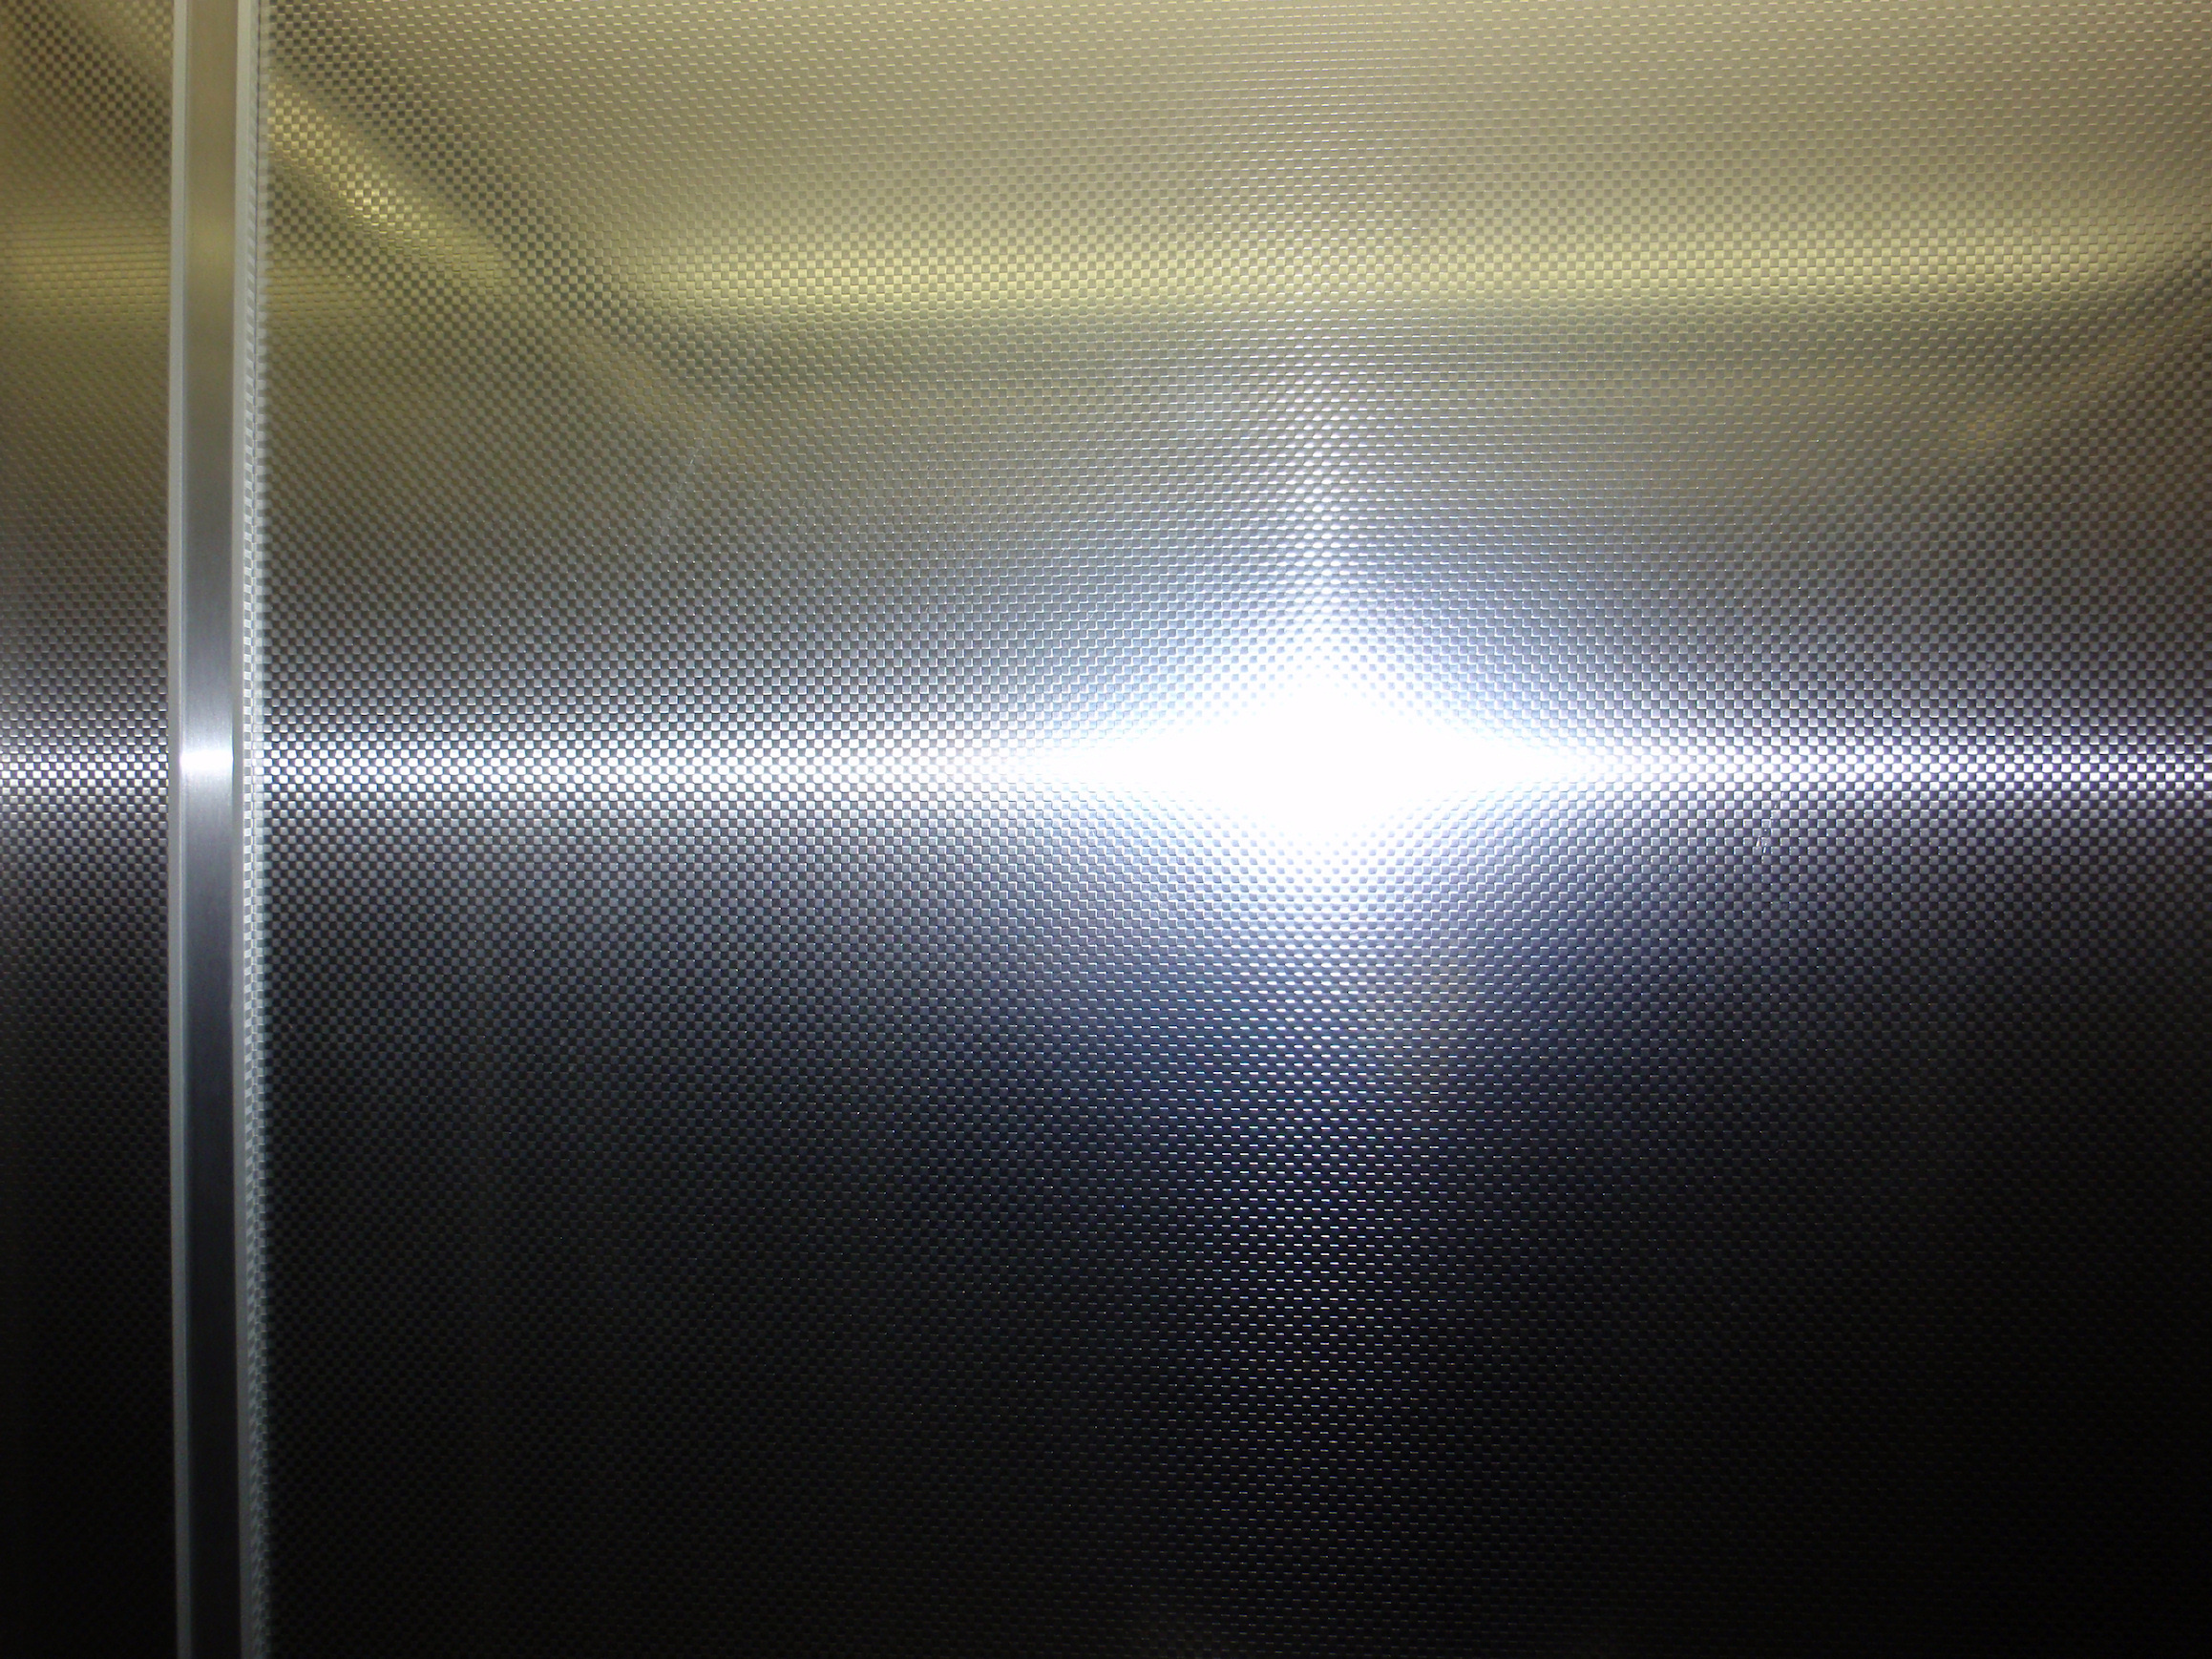 Metallic aluminium surface photo